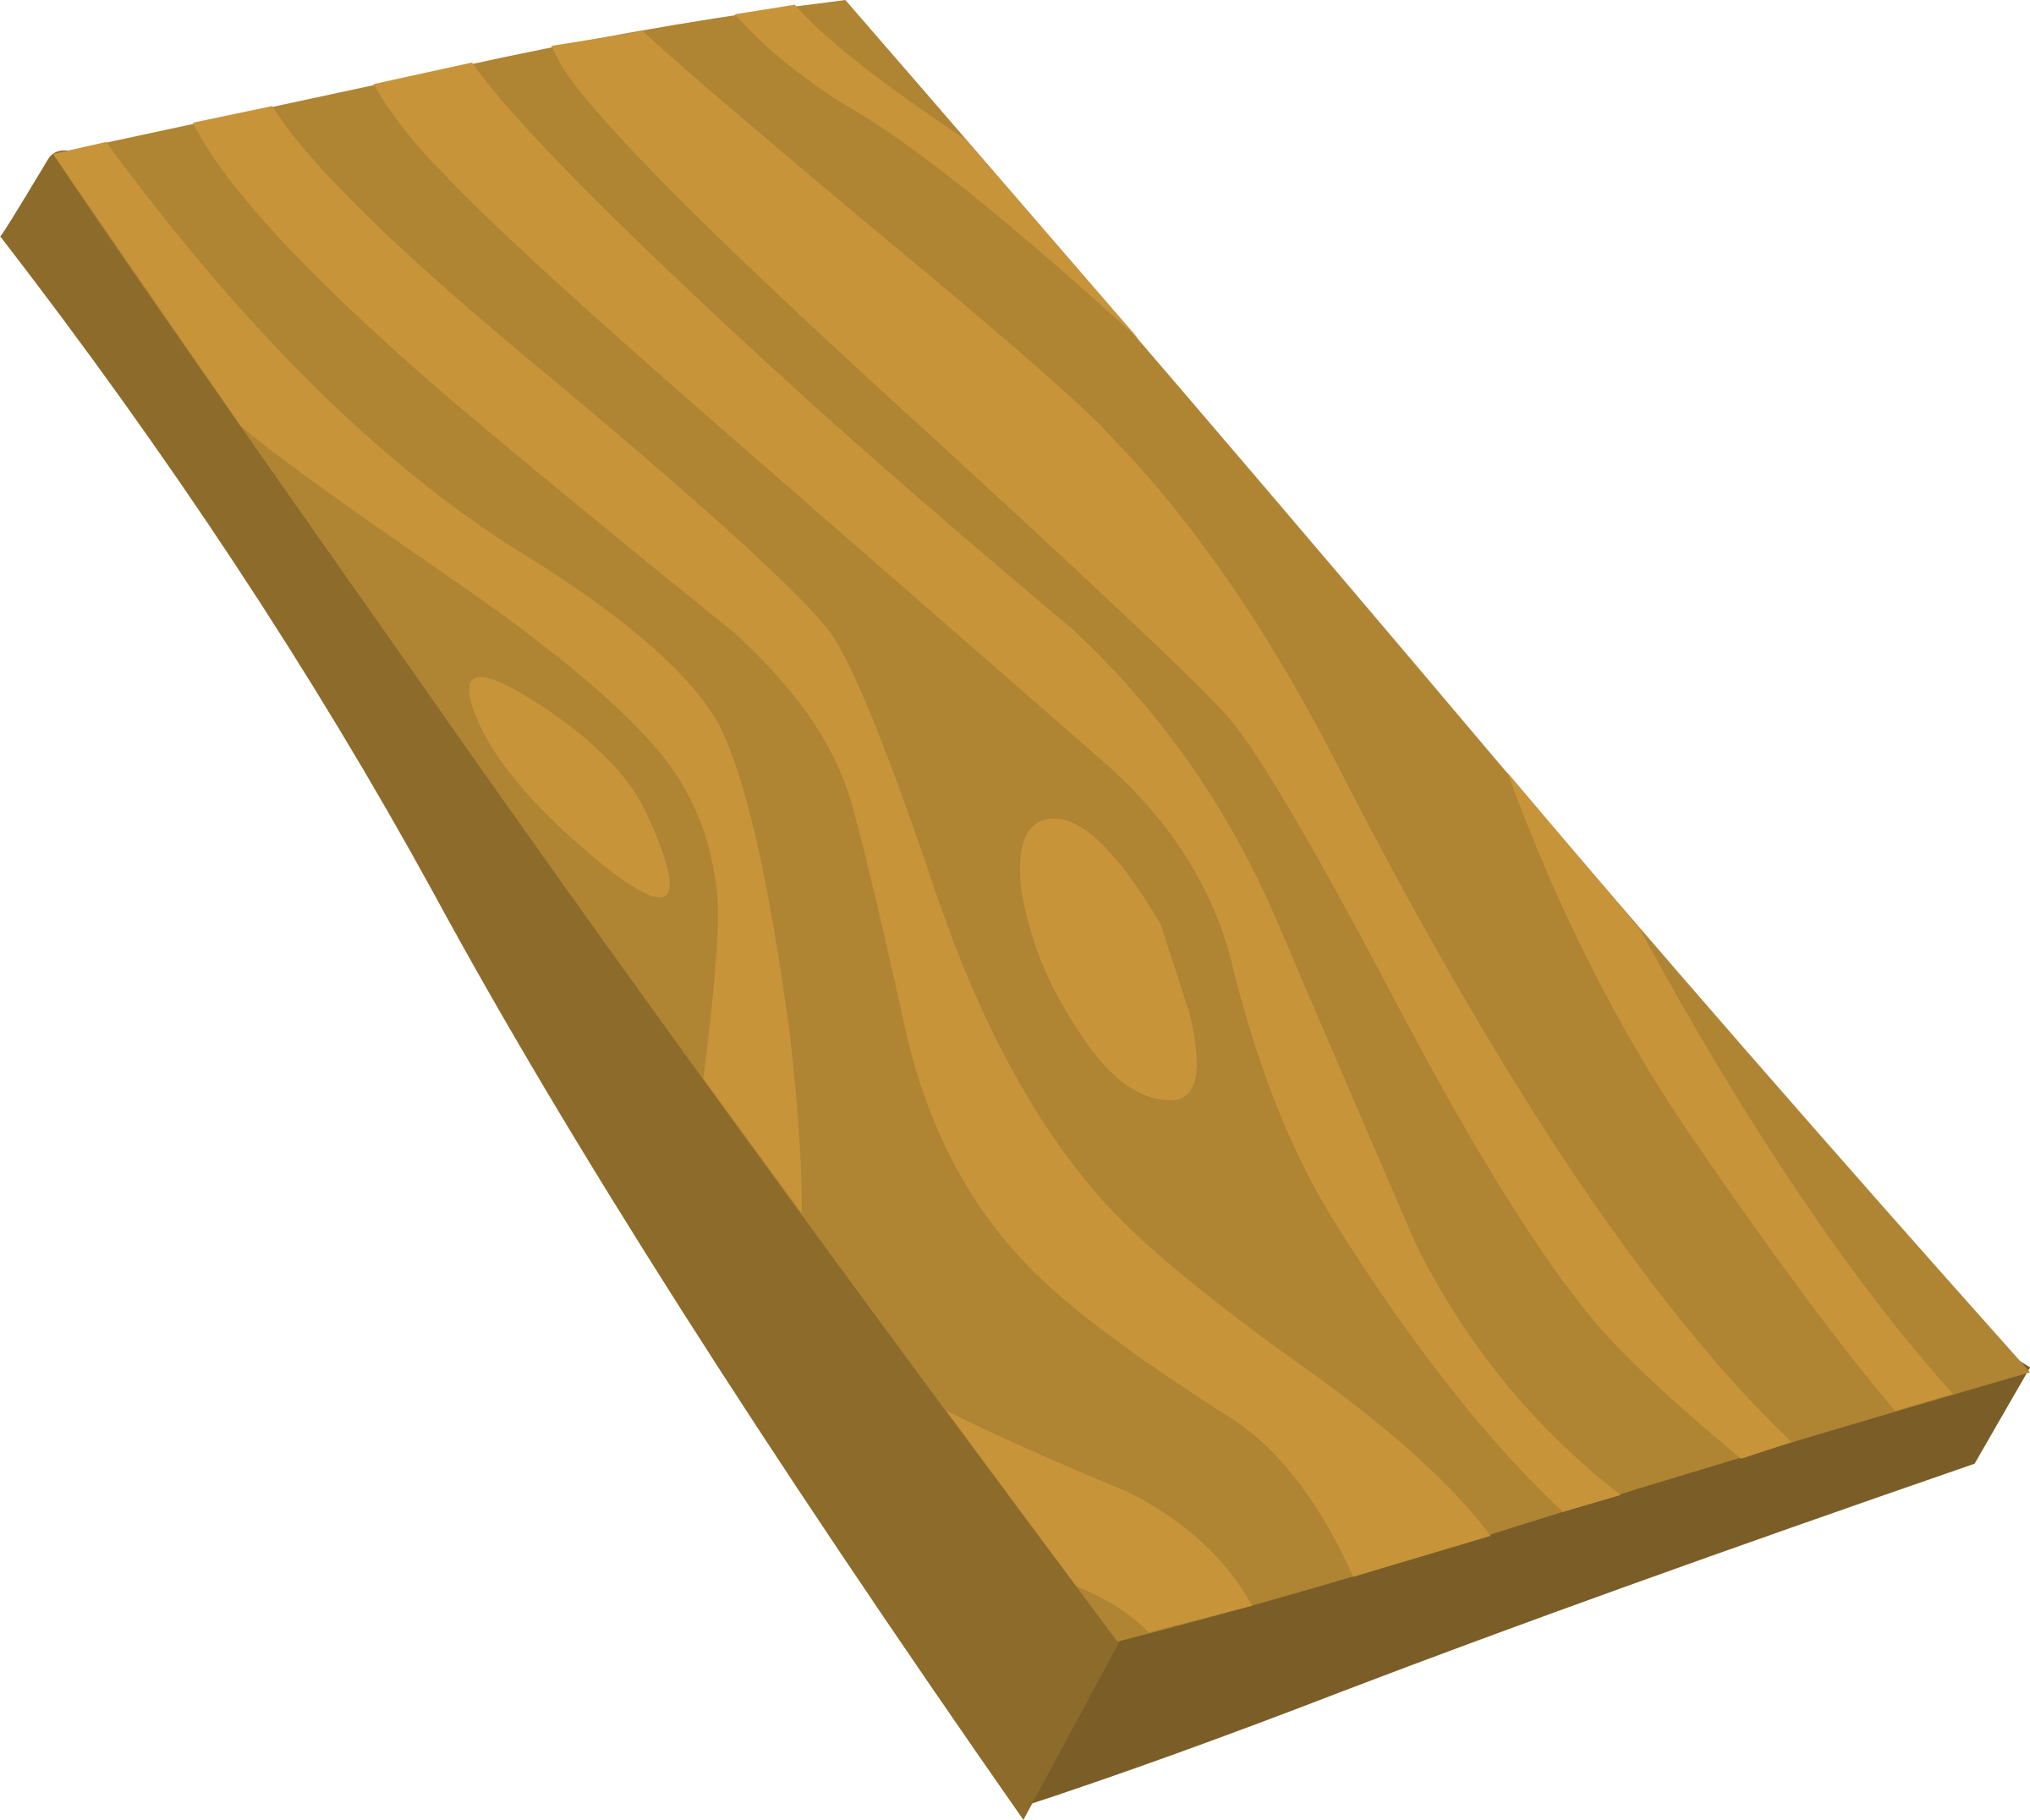 Wood Grain Background Vector 